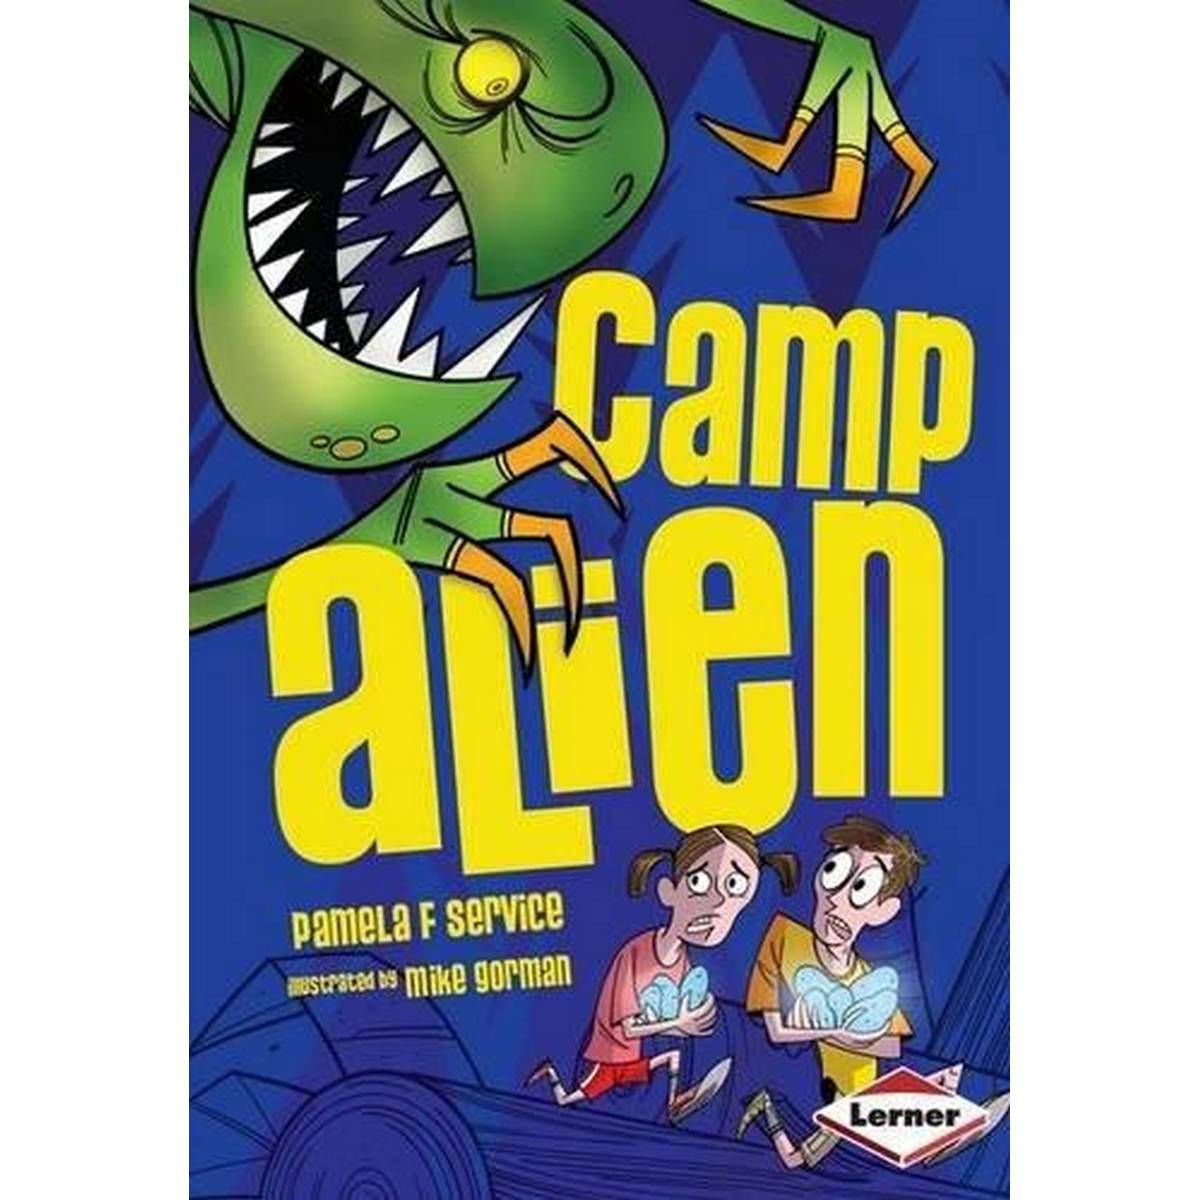 Alien Agent: Camp Alien